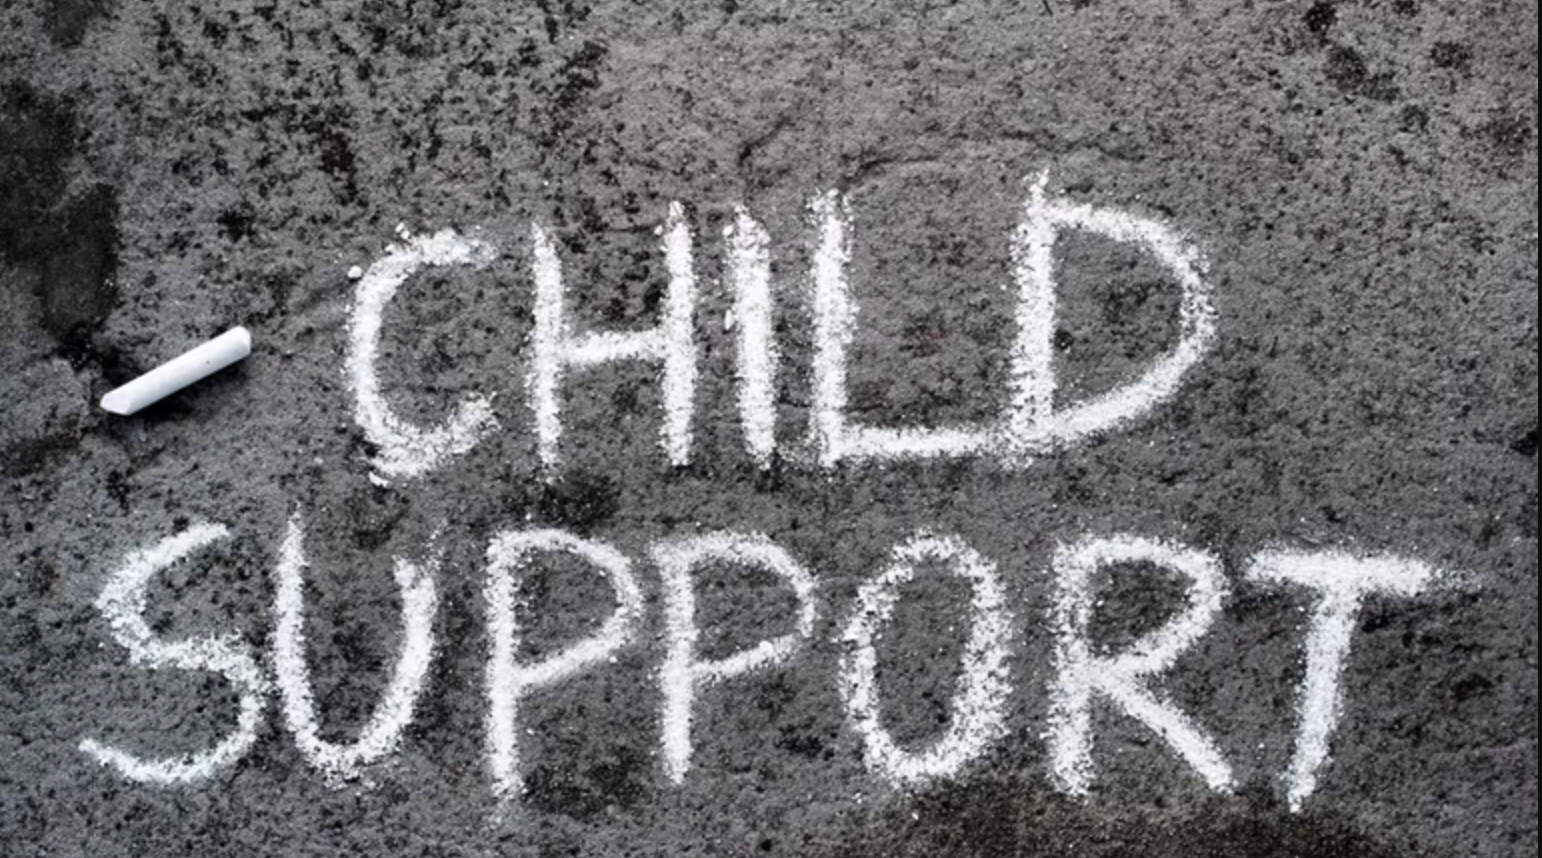 Child Support written in chalk on pavement